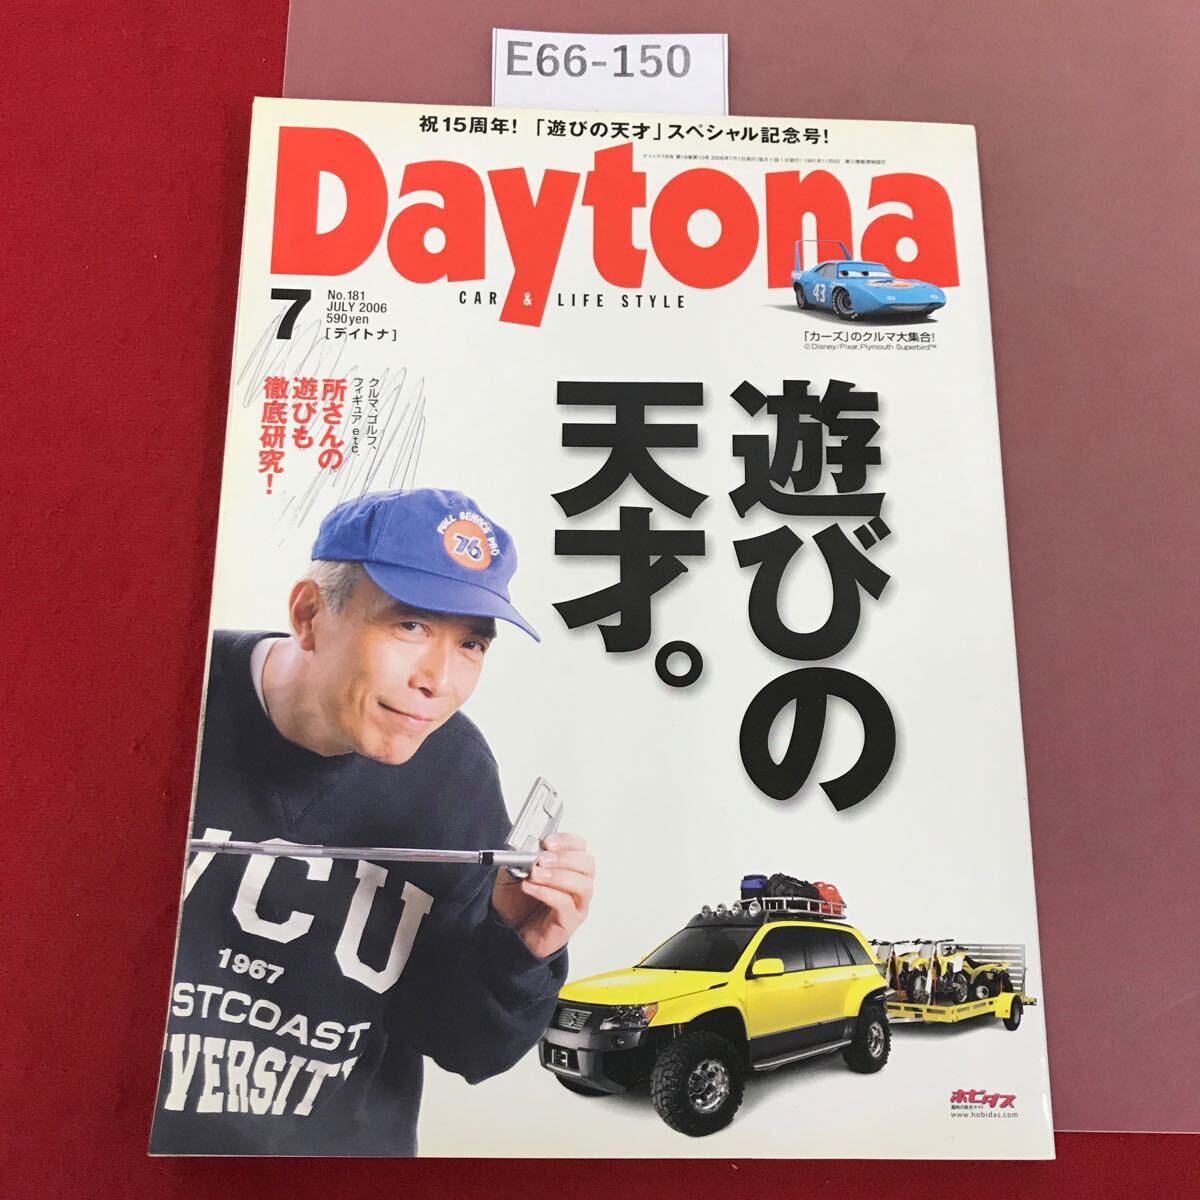 E66-150 Daytona 2006/7 No.181 15周年特別記念号！ 遊びの天才。 ネコ・パブリッシング 所ジョージ 表紙、書き込み有り_画像1